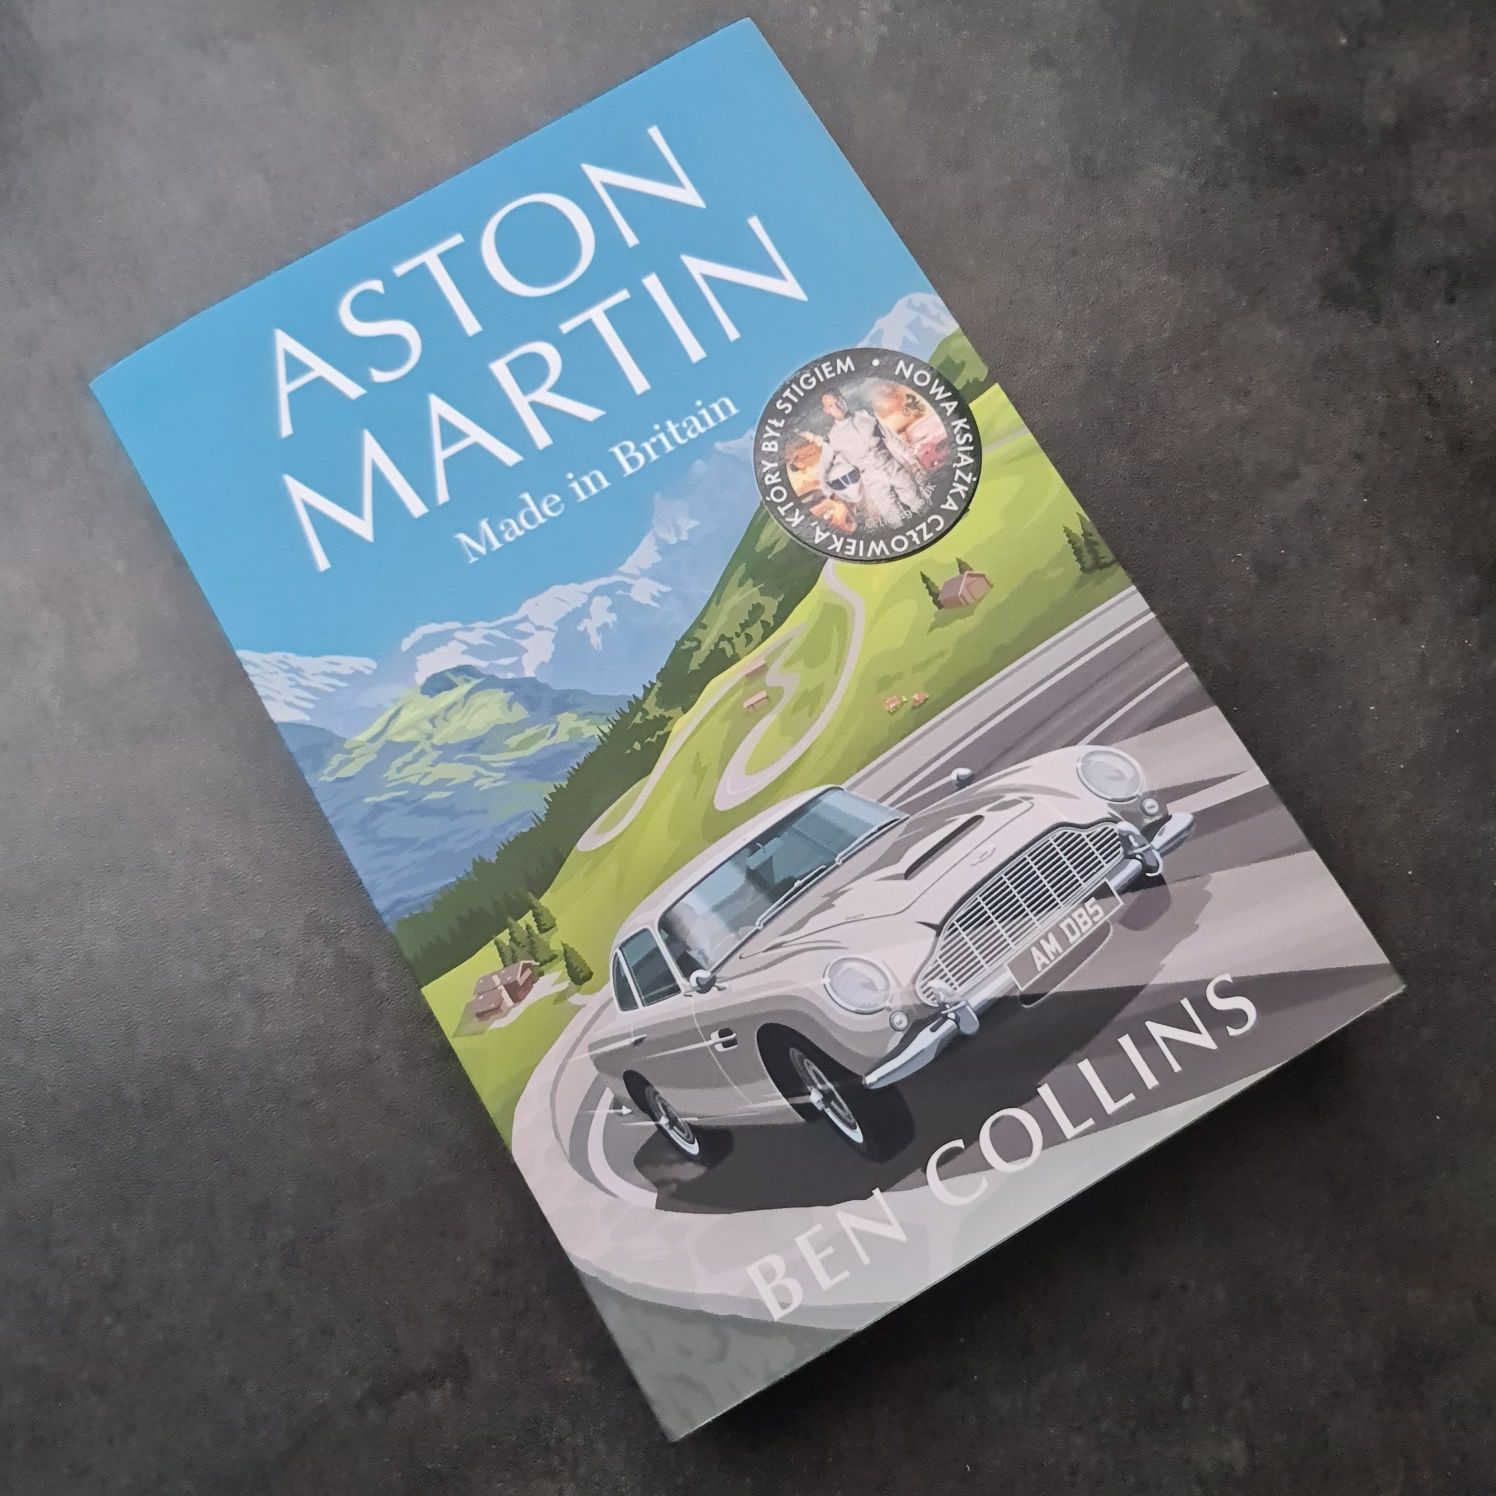 Aston Martin. Mede in Britain Ben Collins nowa